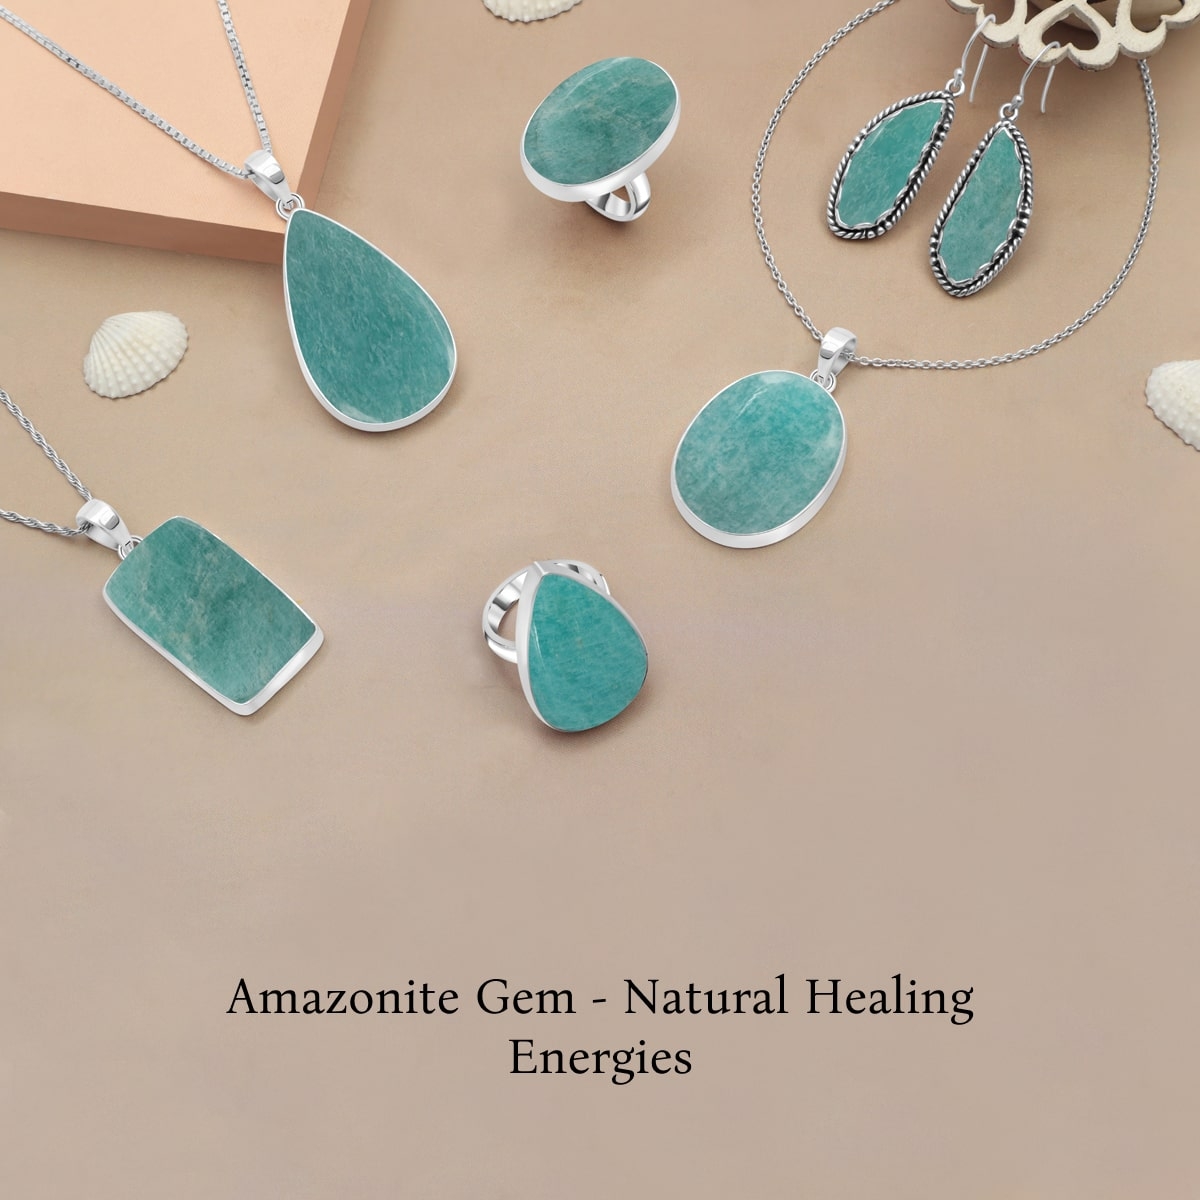 Healing Properties of Amazonite Gemstone